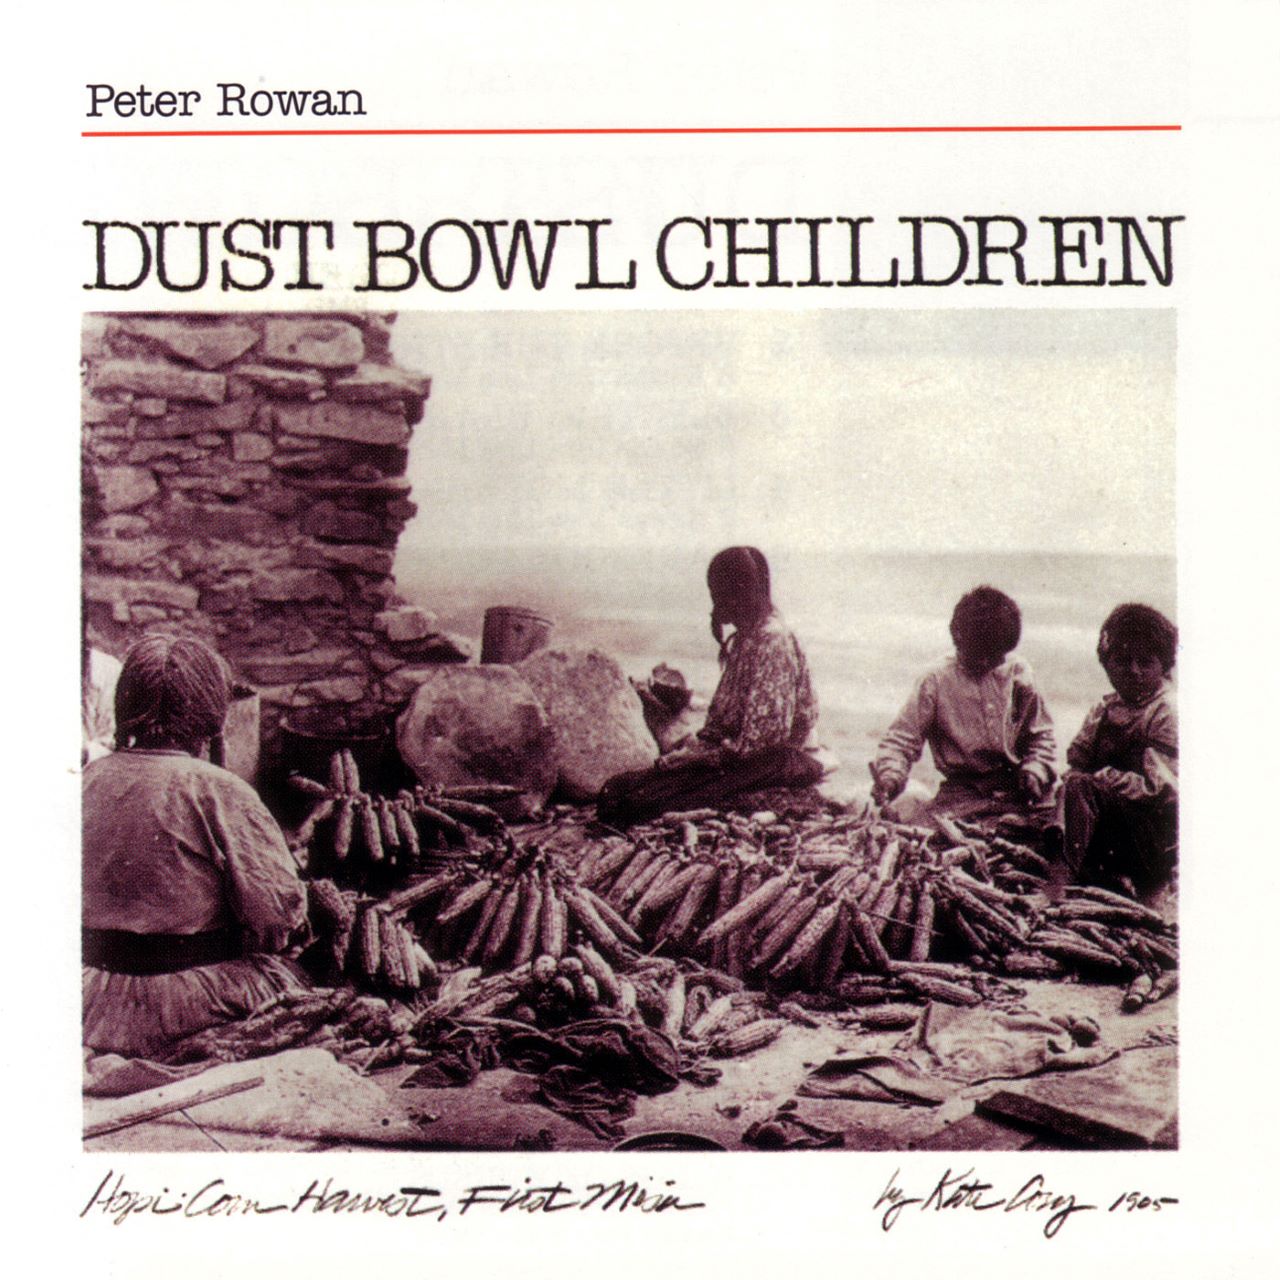 Peter Rowan - Dust Bowl Children cover album